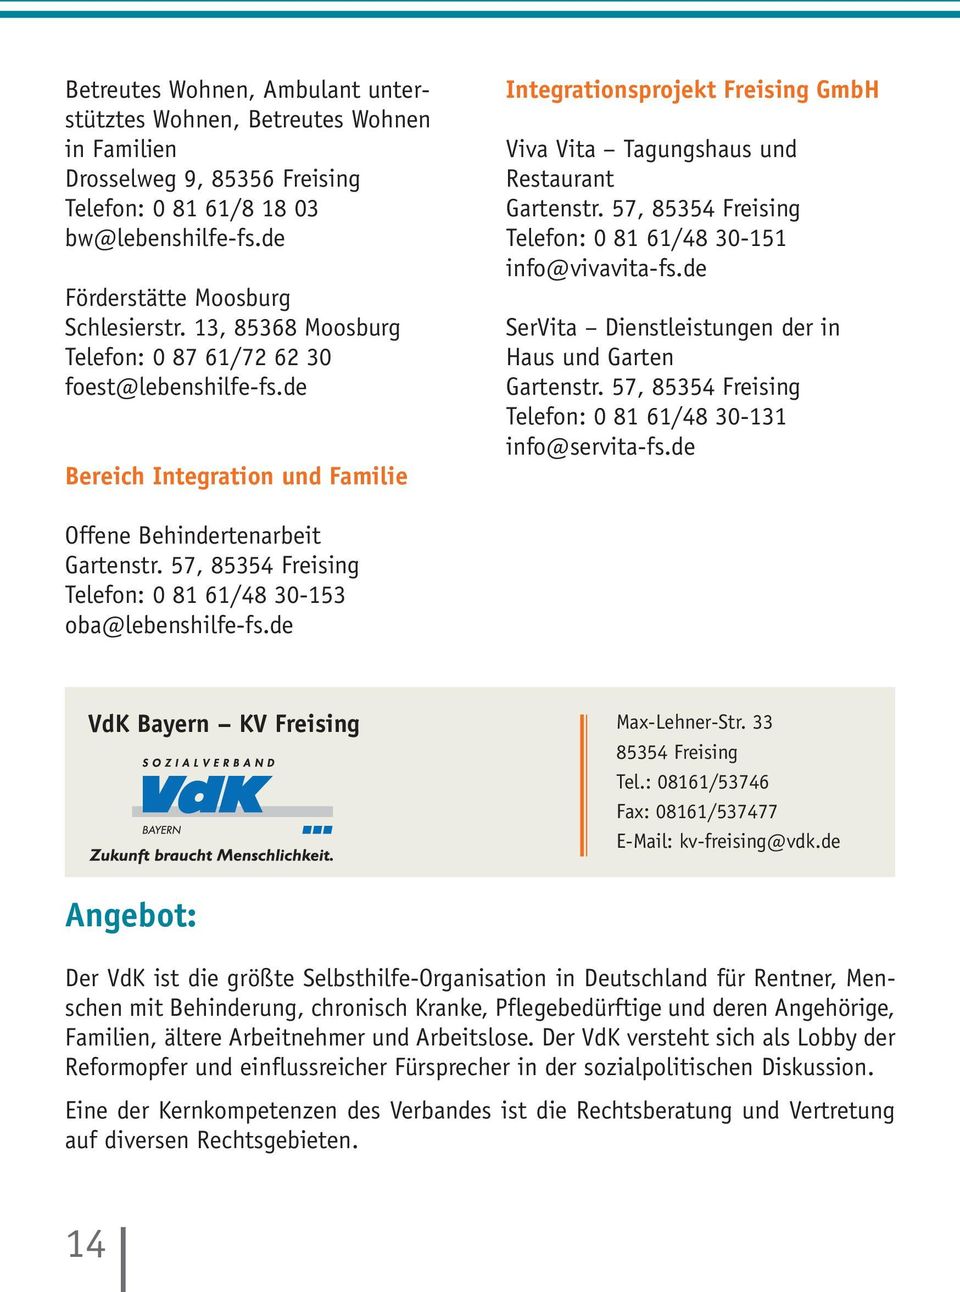 57, 85354 Freising Telefon: 0 81 61/48 30-151 info@vivavita-fs.de SerVita Dienstleistungen der in Haus und Garten Gartenstr. 57, 85354 Freising Telefon: 0 81 61/48 30-131 info@servita-fs.